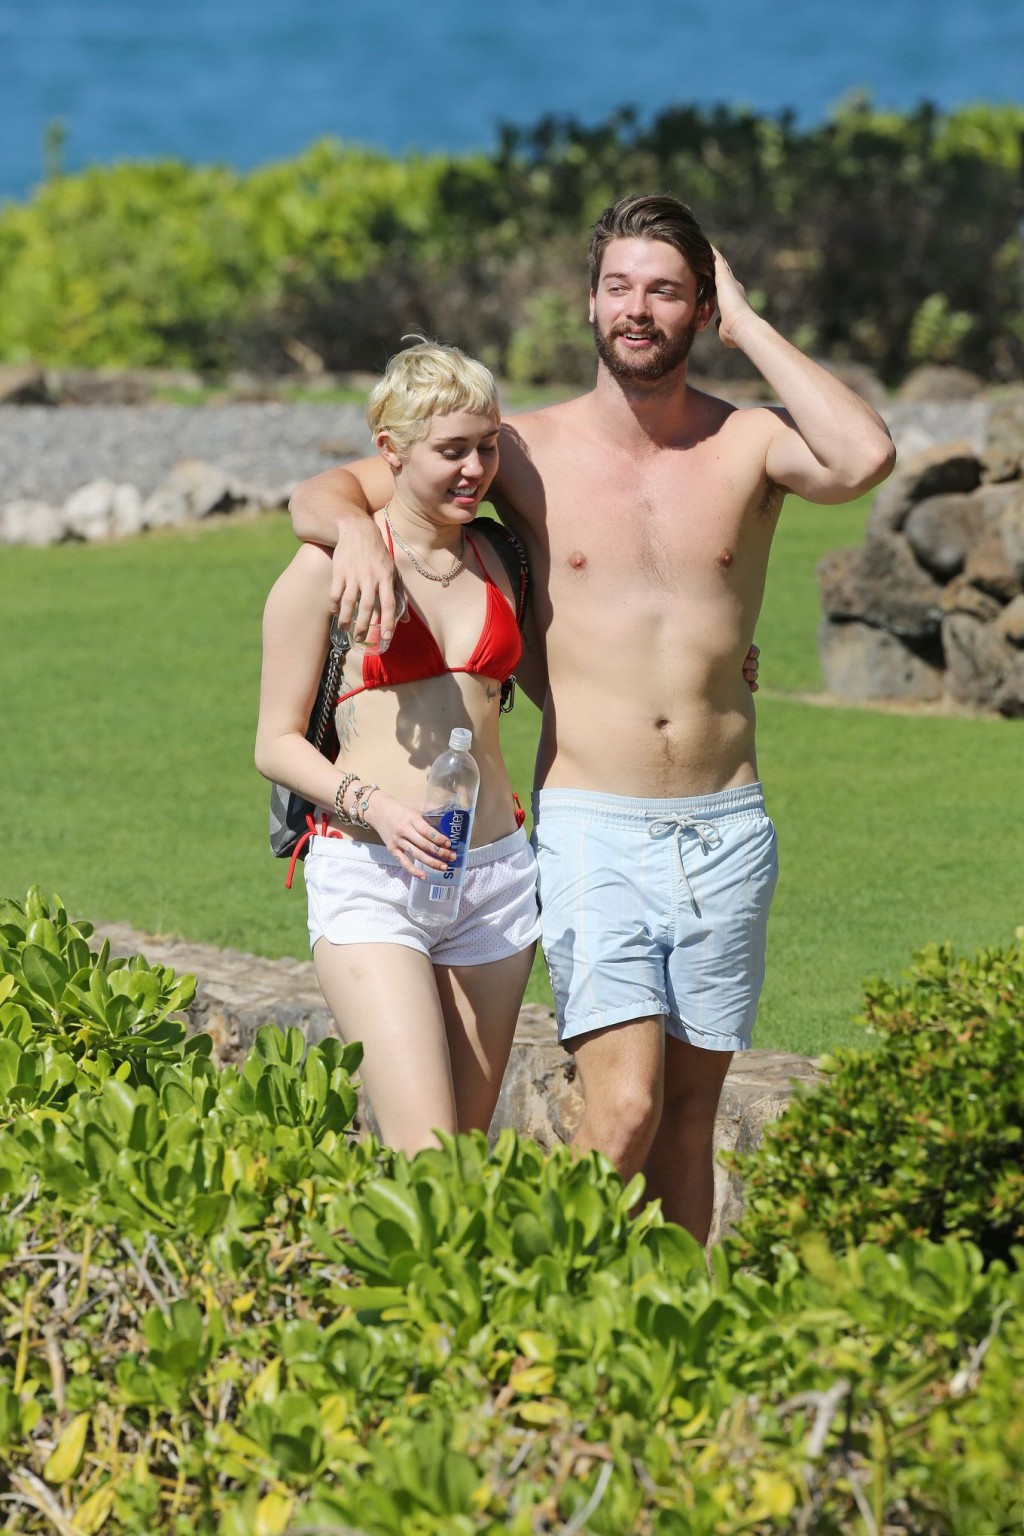 Miley cyrus con un diminuto bikini rojo y unos shorts transparentes en sus vacaciones en hawai
 #75175117